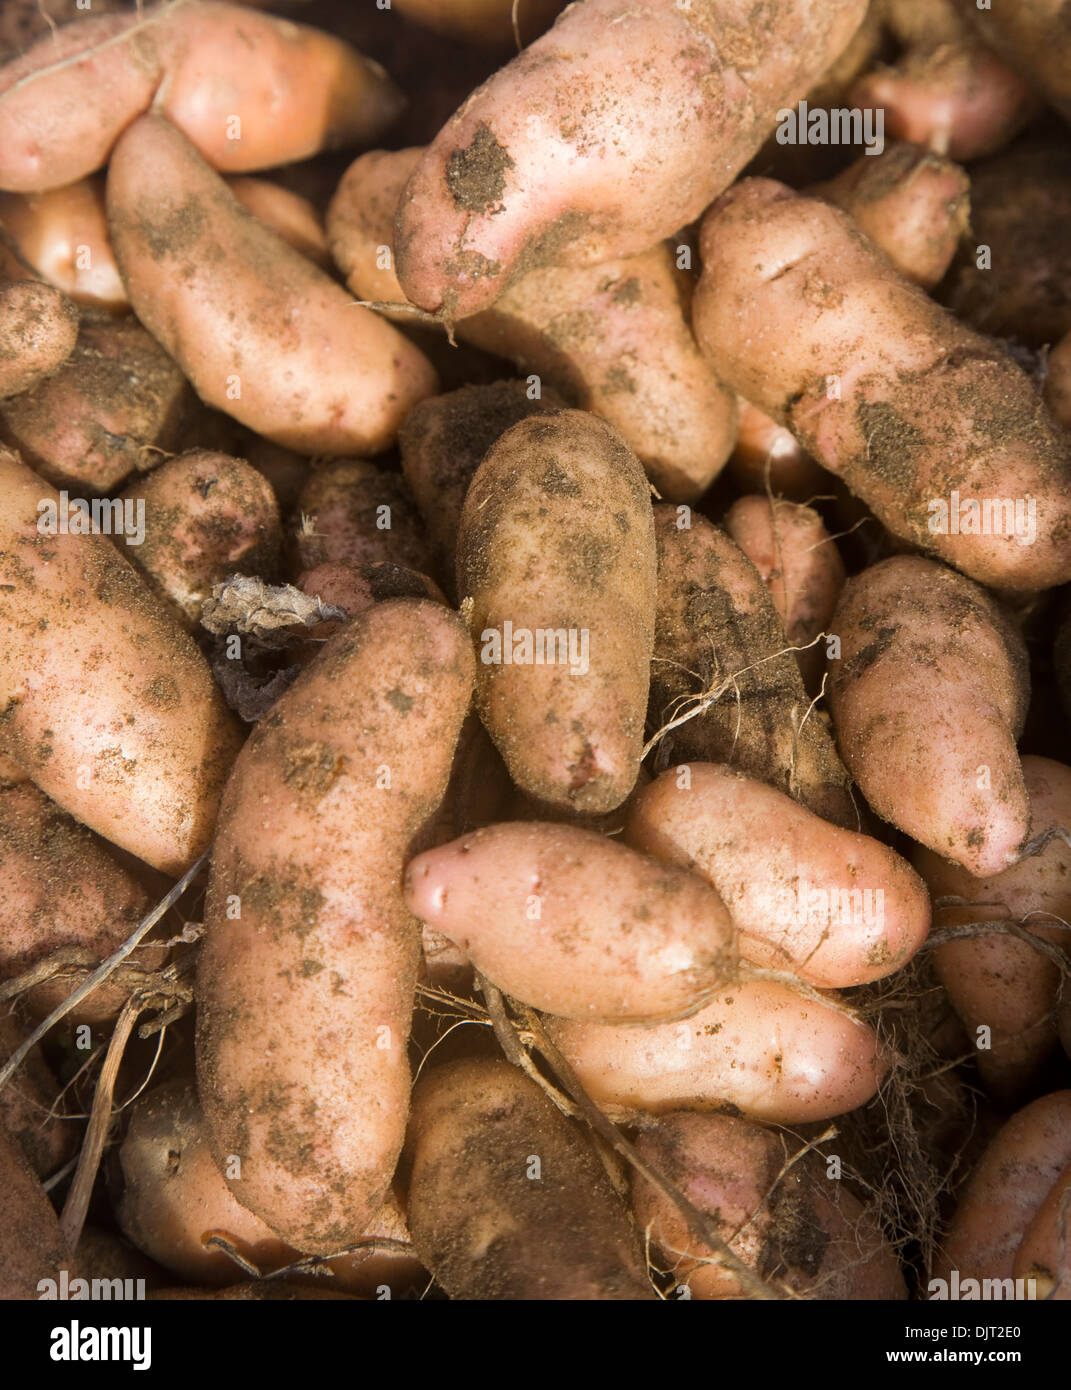 Pink fir apple potatoes close-up Stock Photo